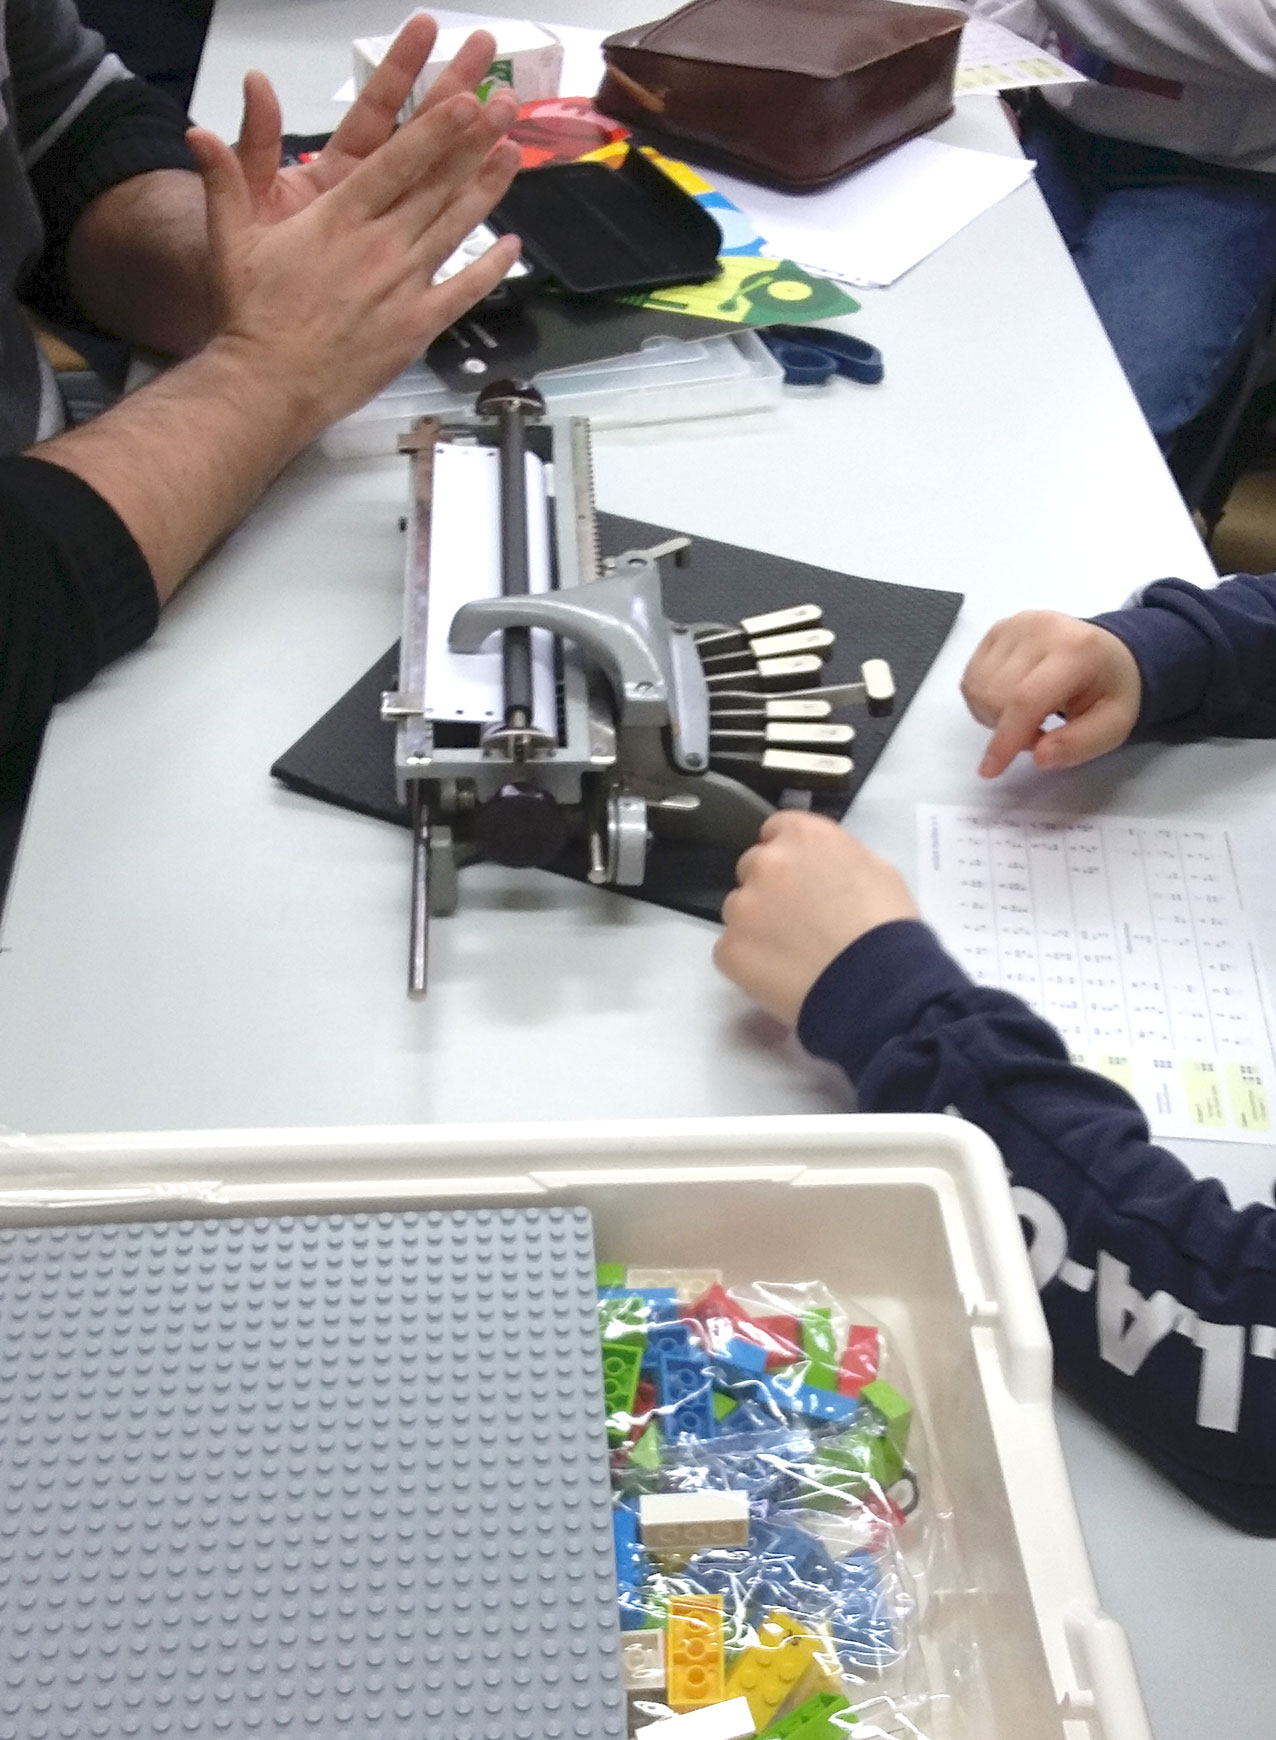 Im Akkord werden unsere drei Pichtmaschinen nacheinander durch alle Jugendlichen bedient, um ihren Namen oder einen kurzen Gruß in Braille zu schreiben. Auch die Braille-Legosteine stehen zum Ausprobieren auf dem Tisch.